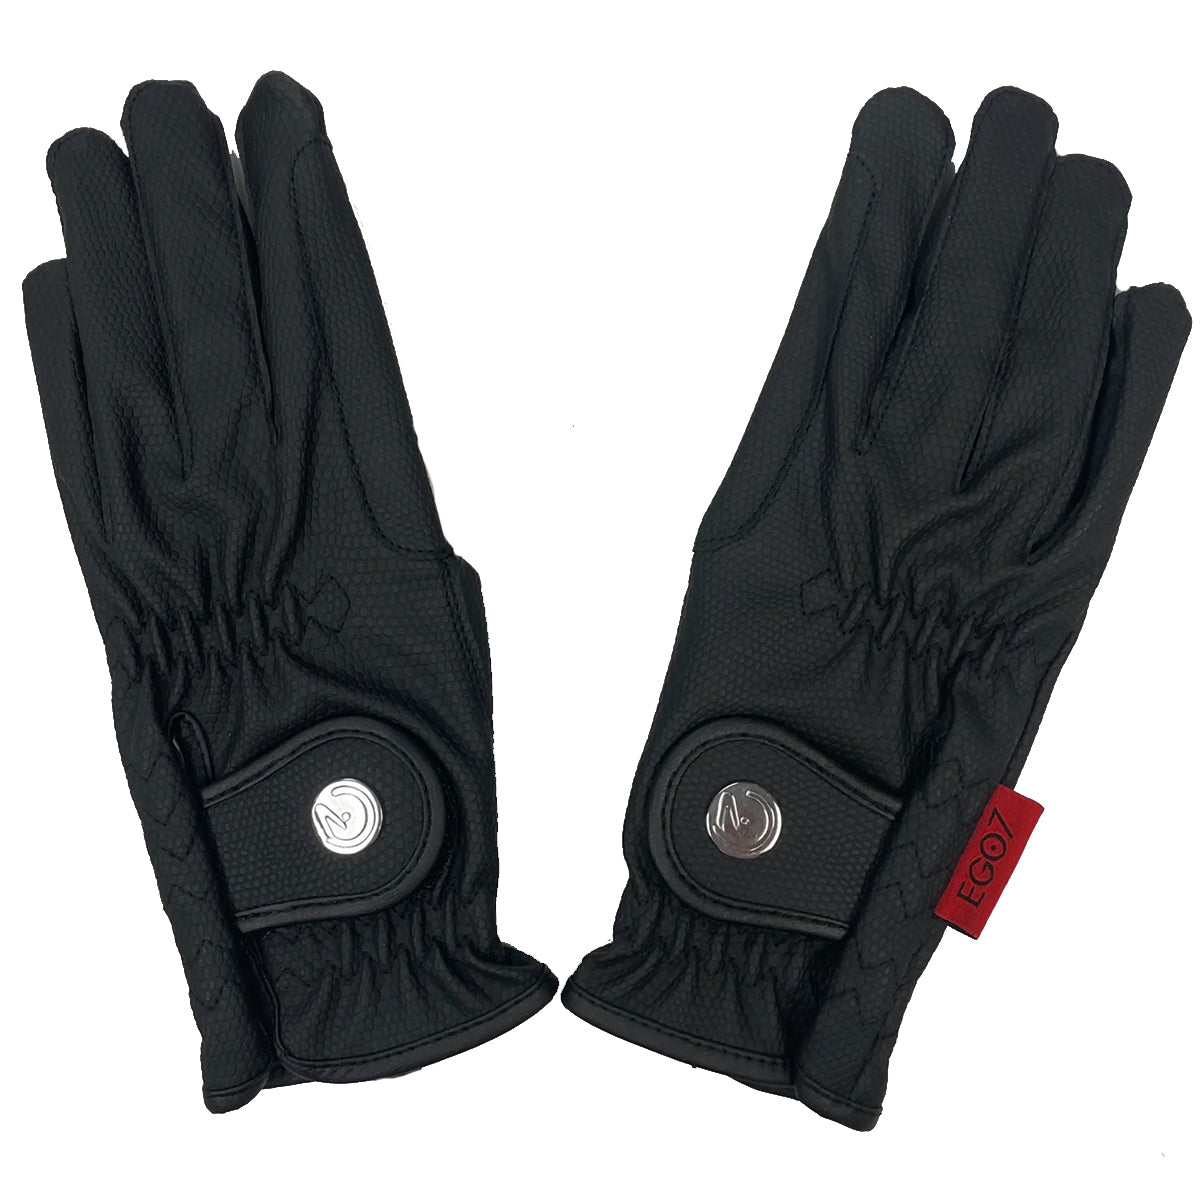 EGO 7 Action Gloves